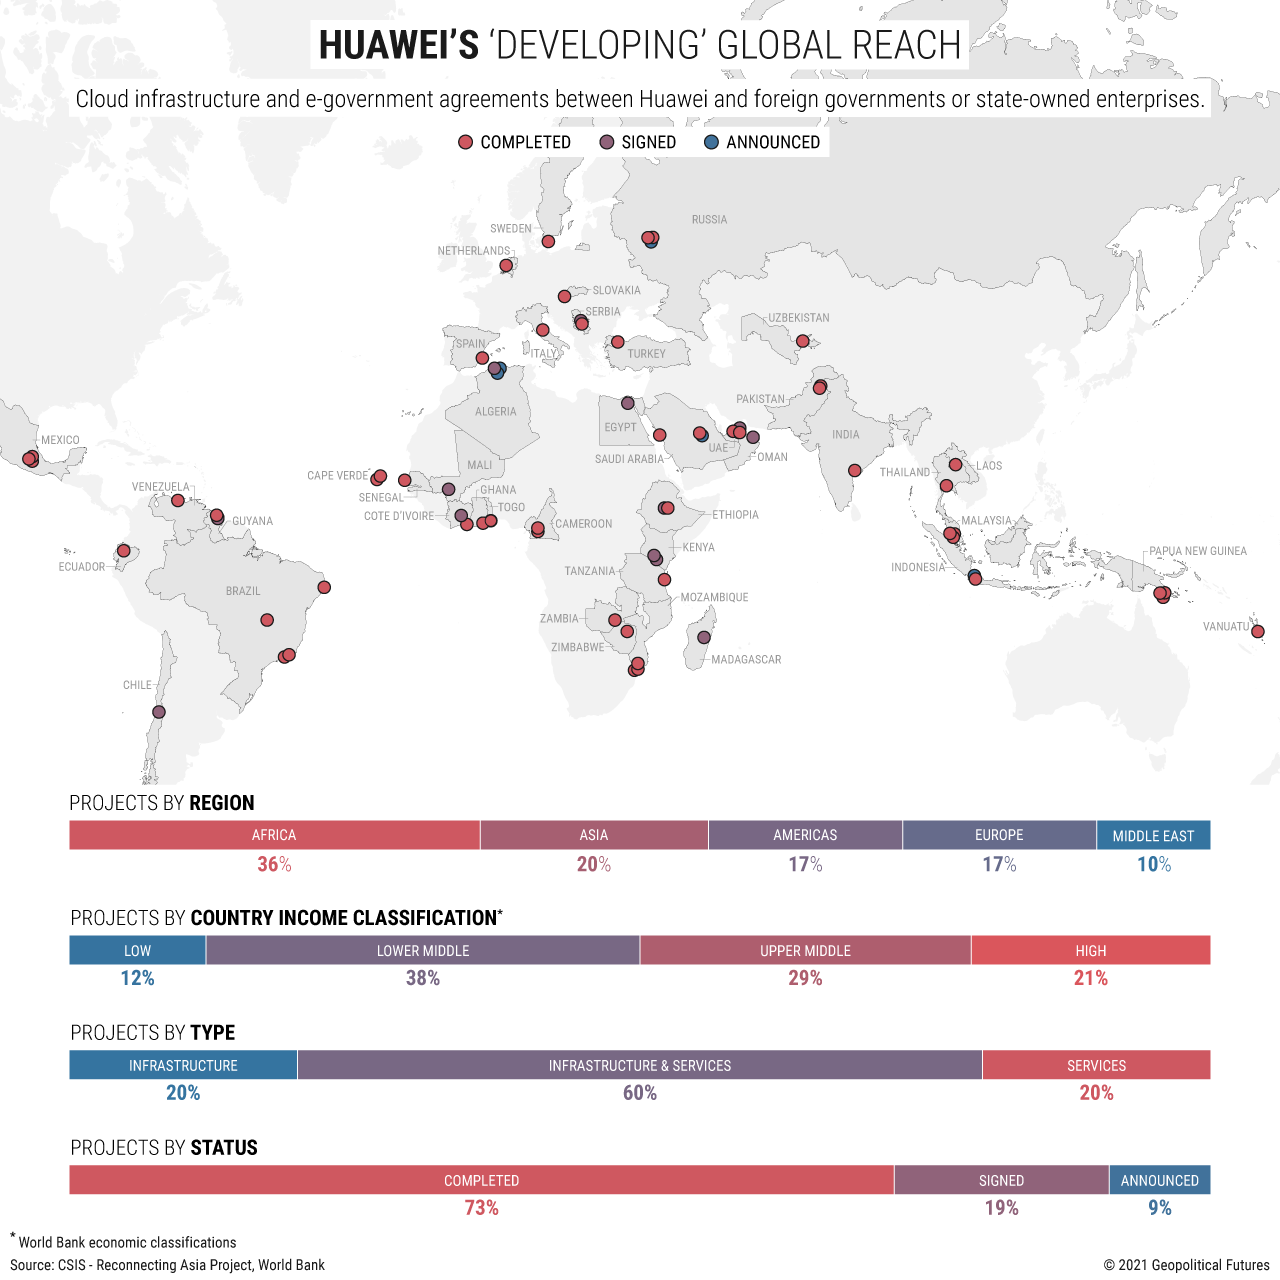 Huawei's Developing Global Reach